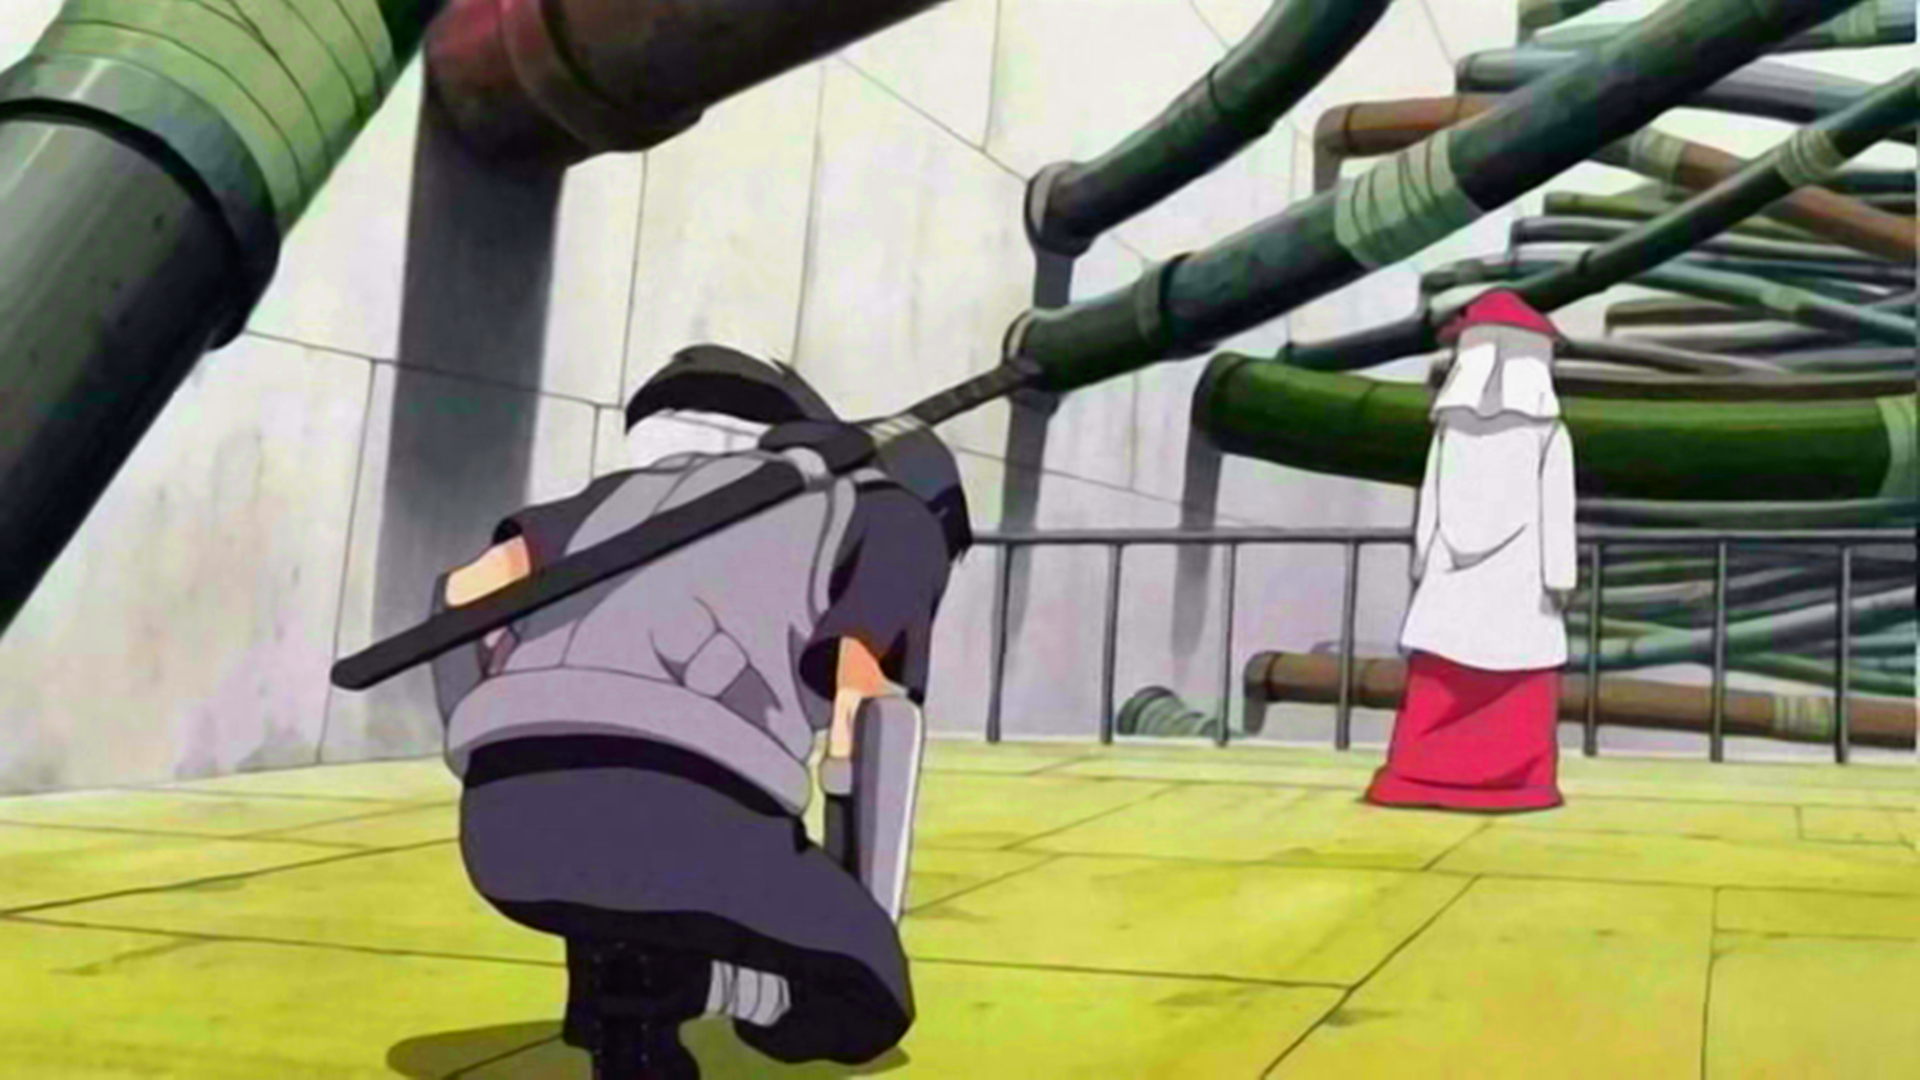 Naruto - Em qual episódio Orochimaru ataca o Terceiro Hokage